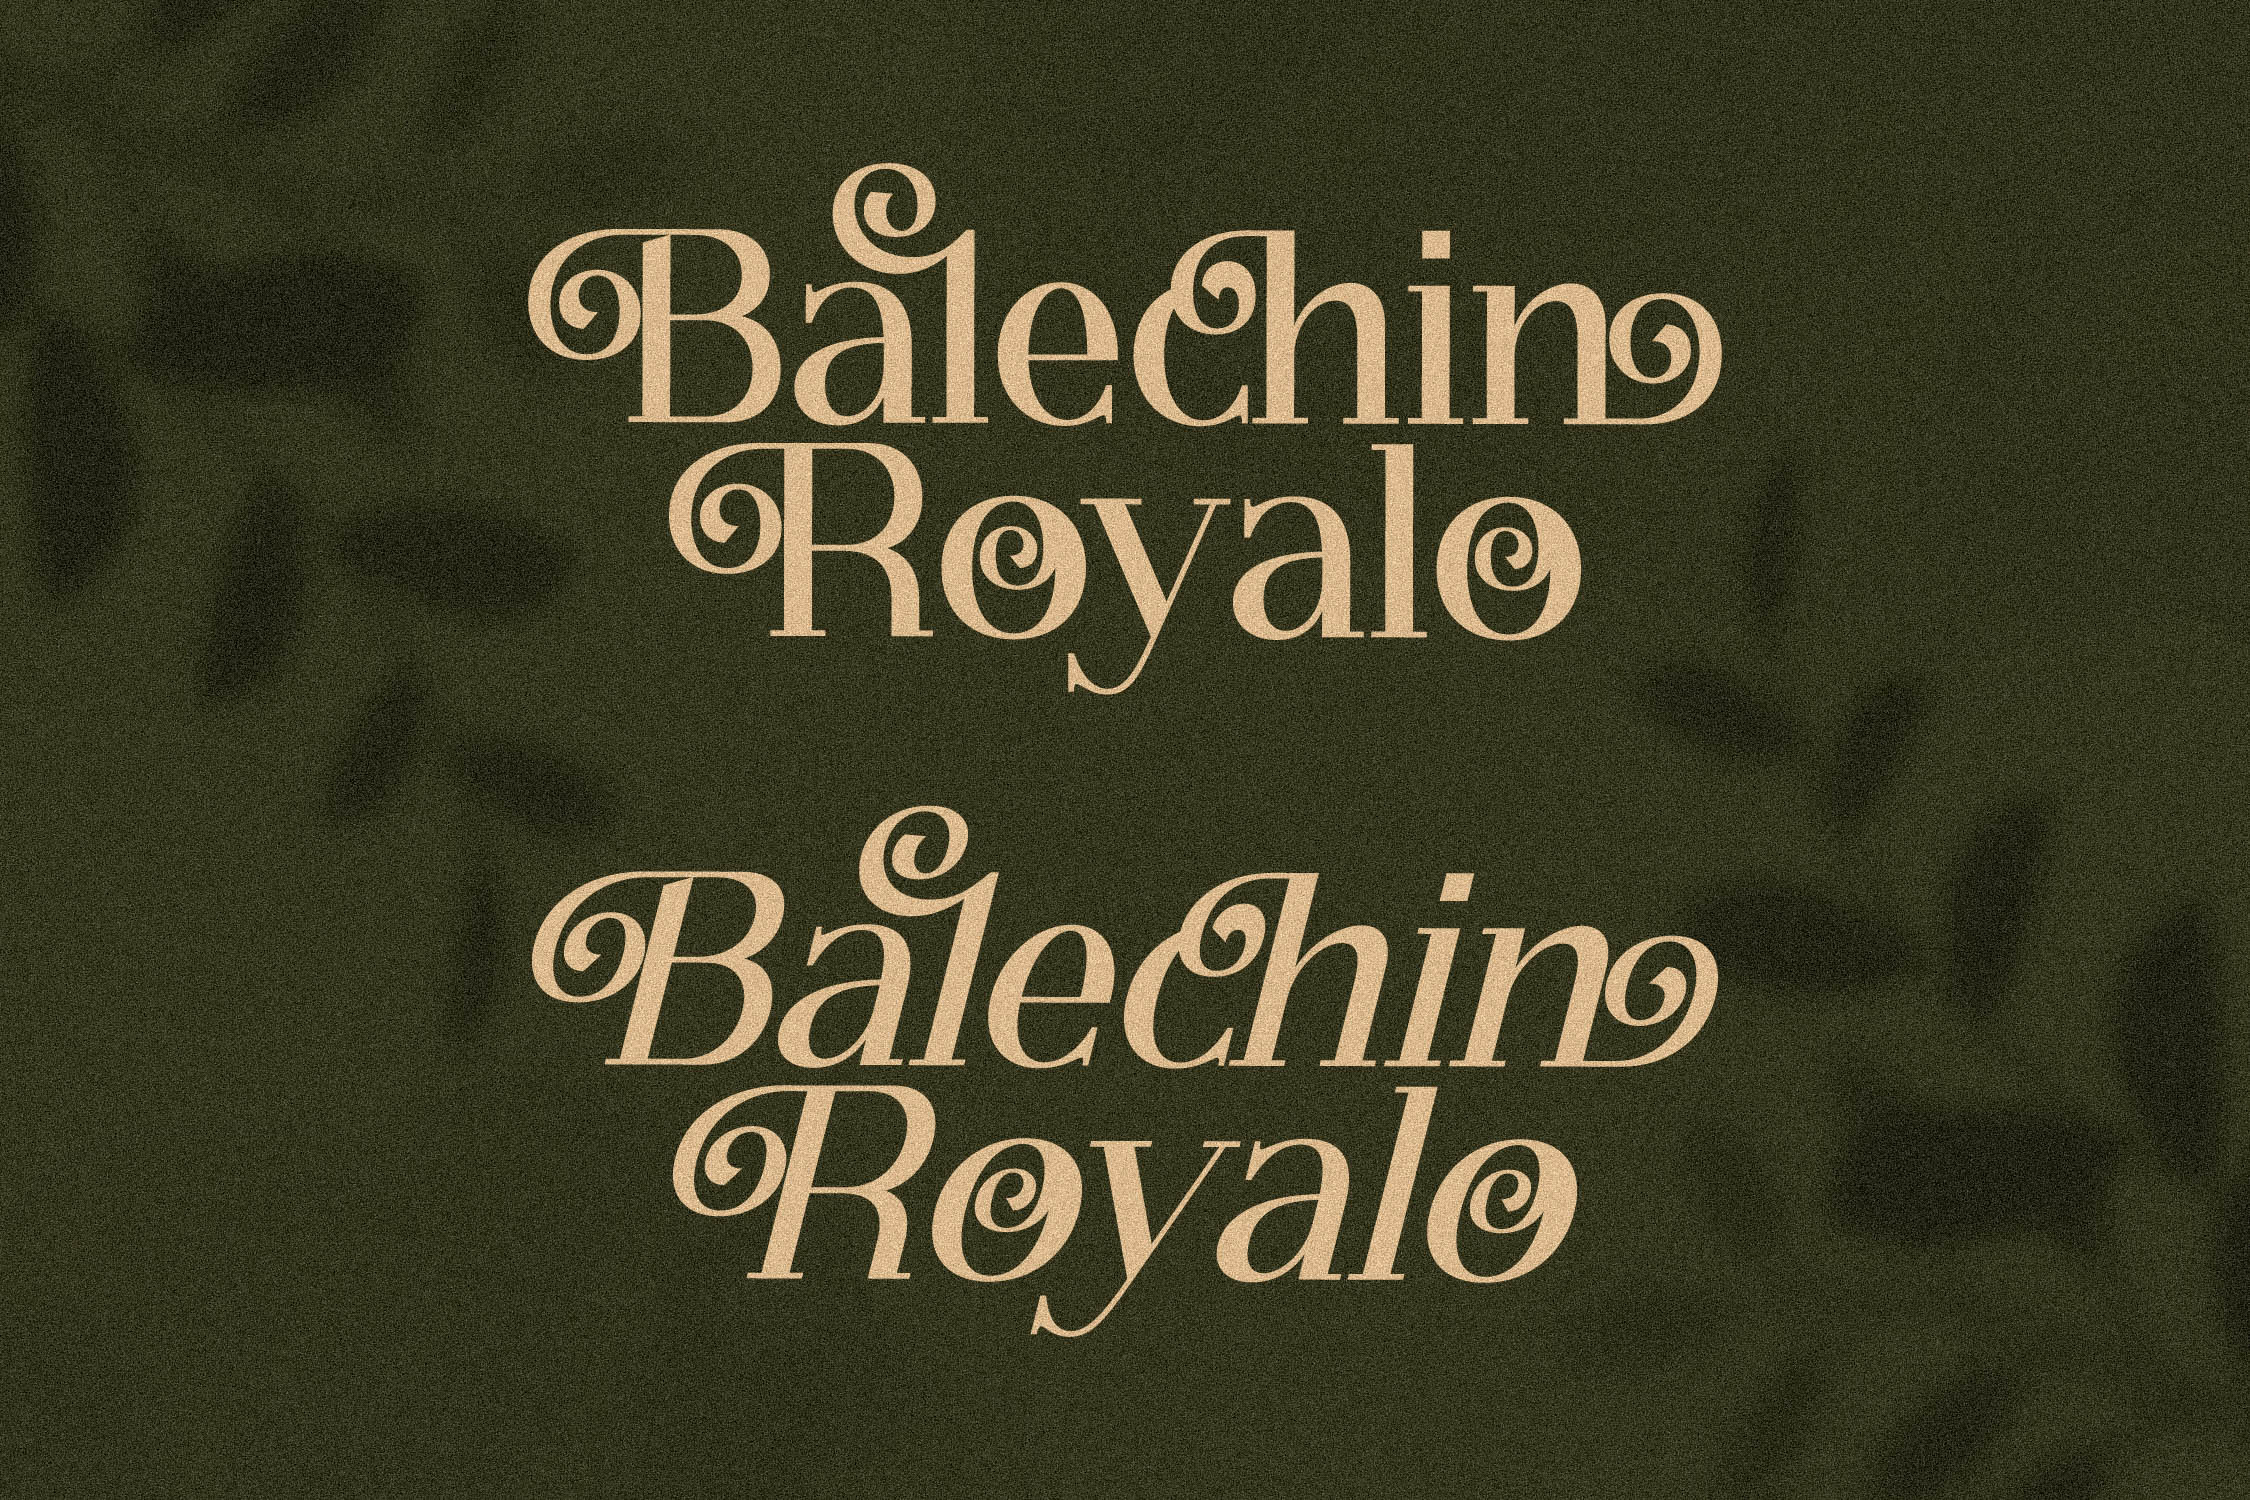 Balechin Royalo